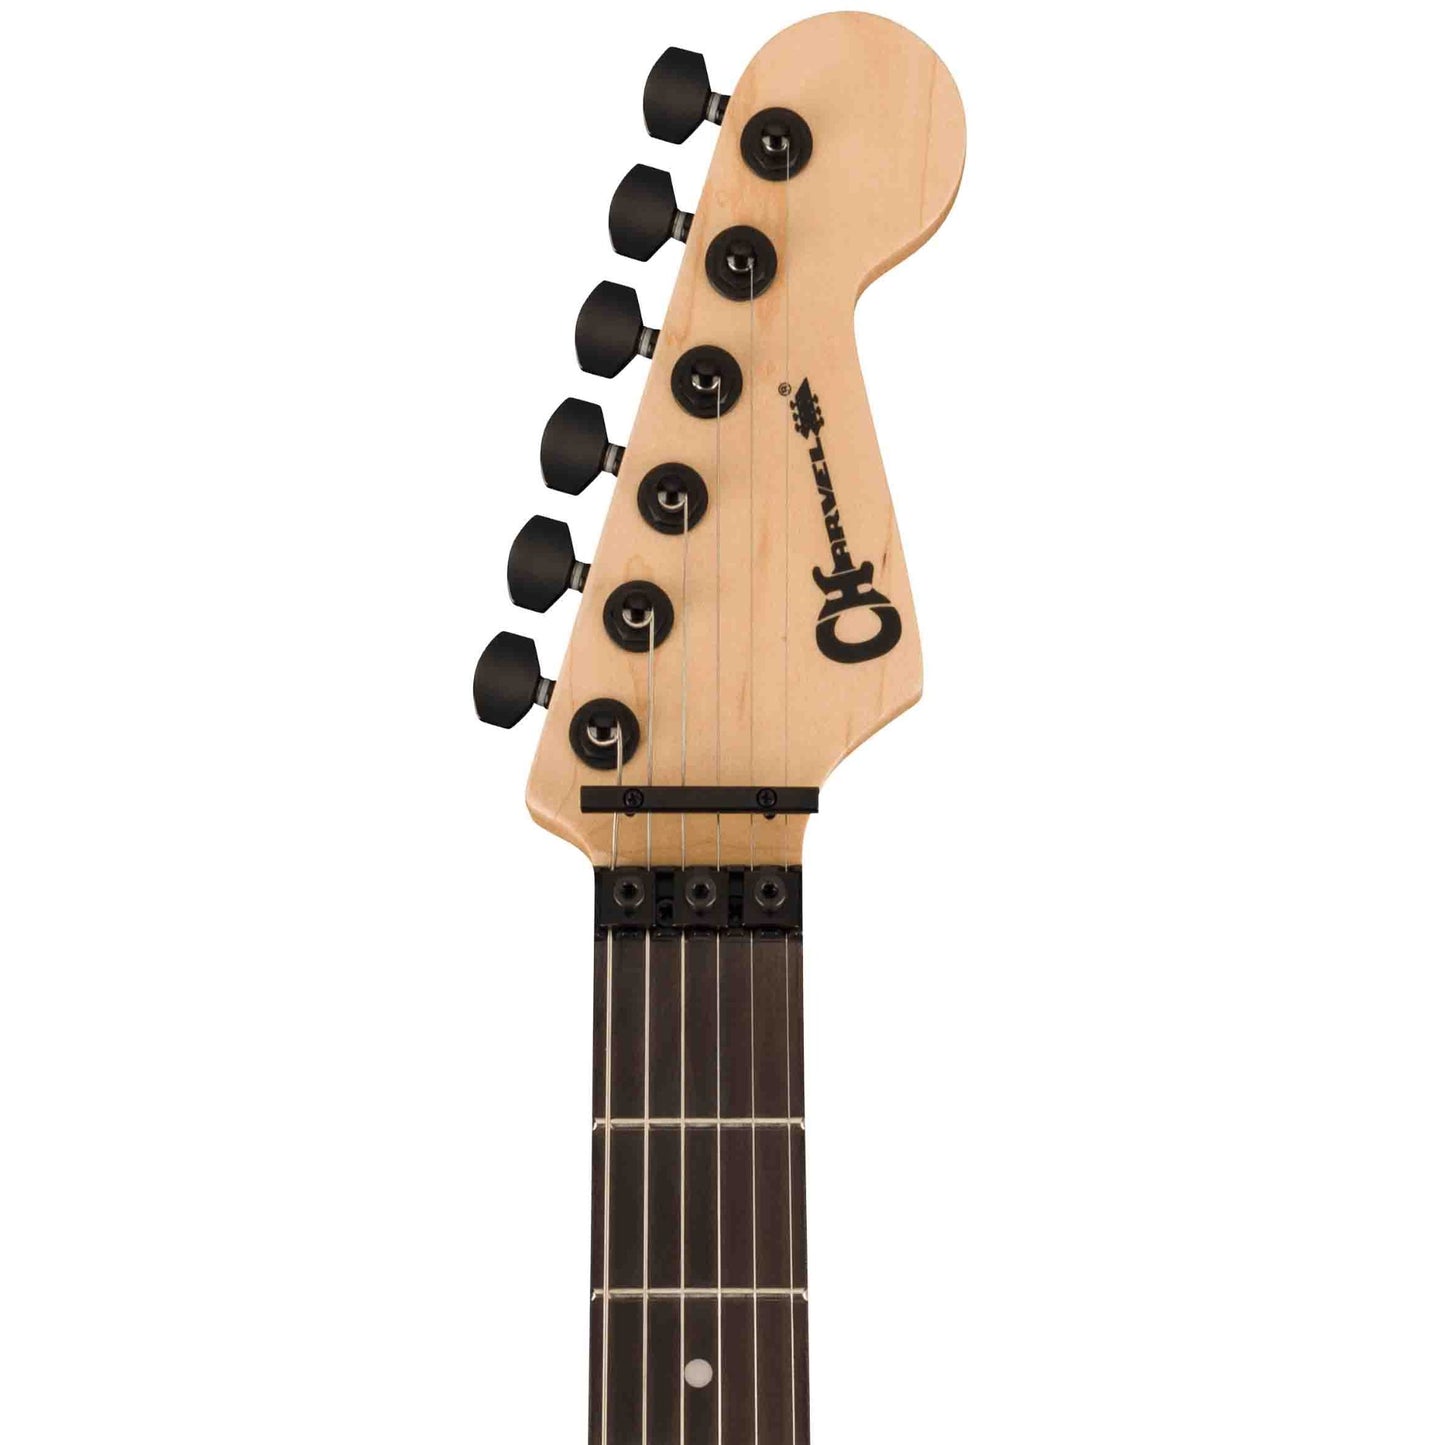 Charvel LTD Pro-Mod San Dimas Style 1 HH FR E Ash Electric Guitar - Green Glow